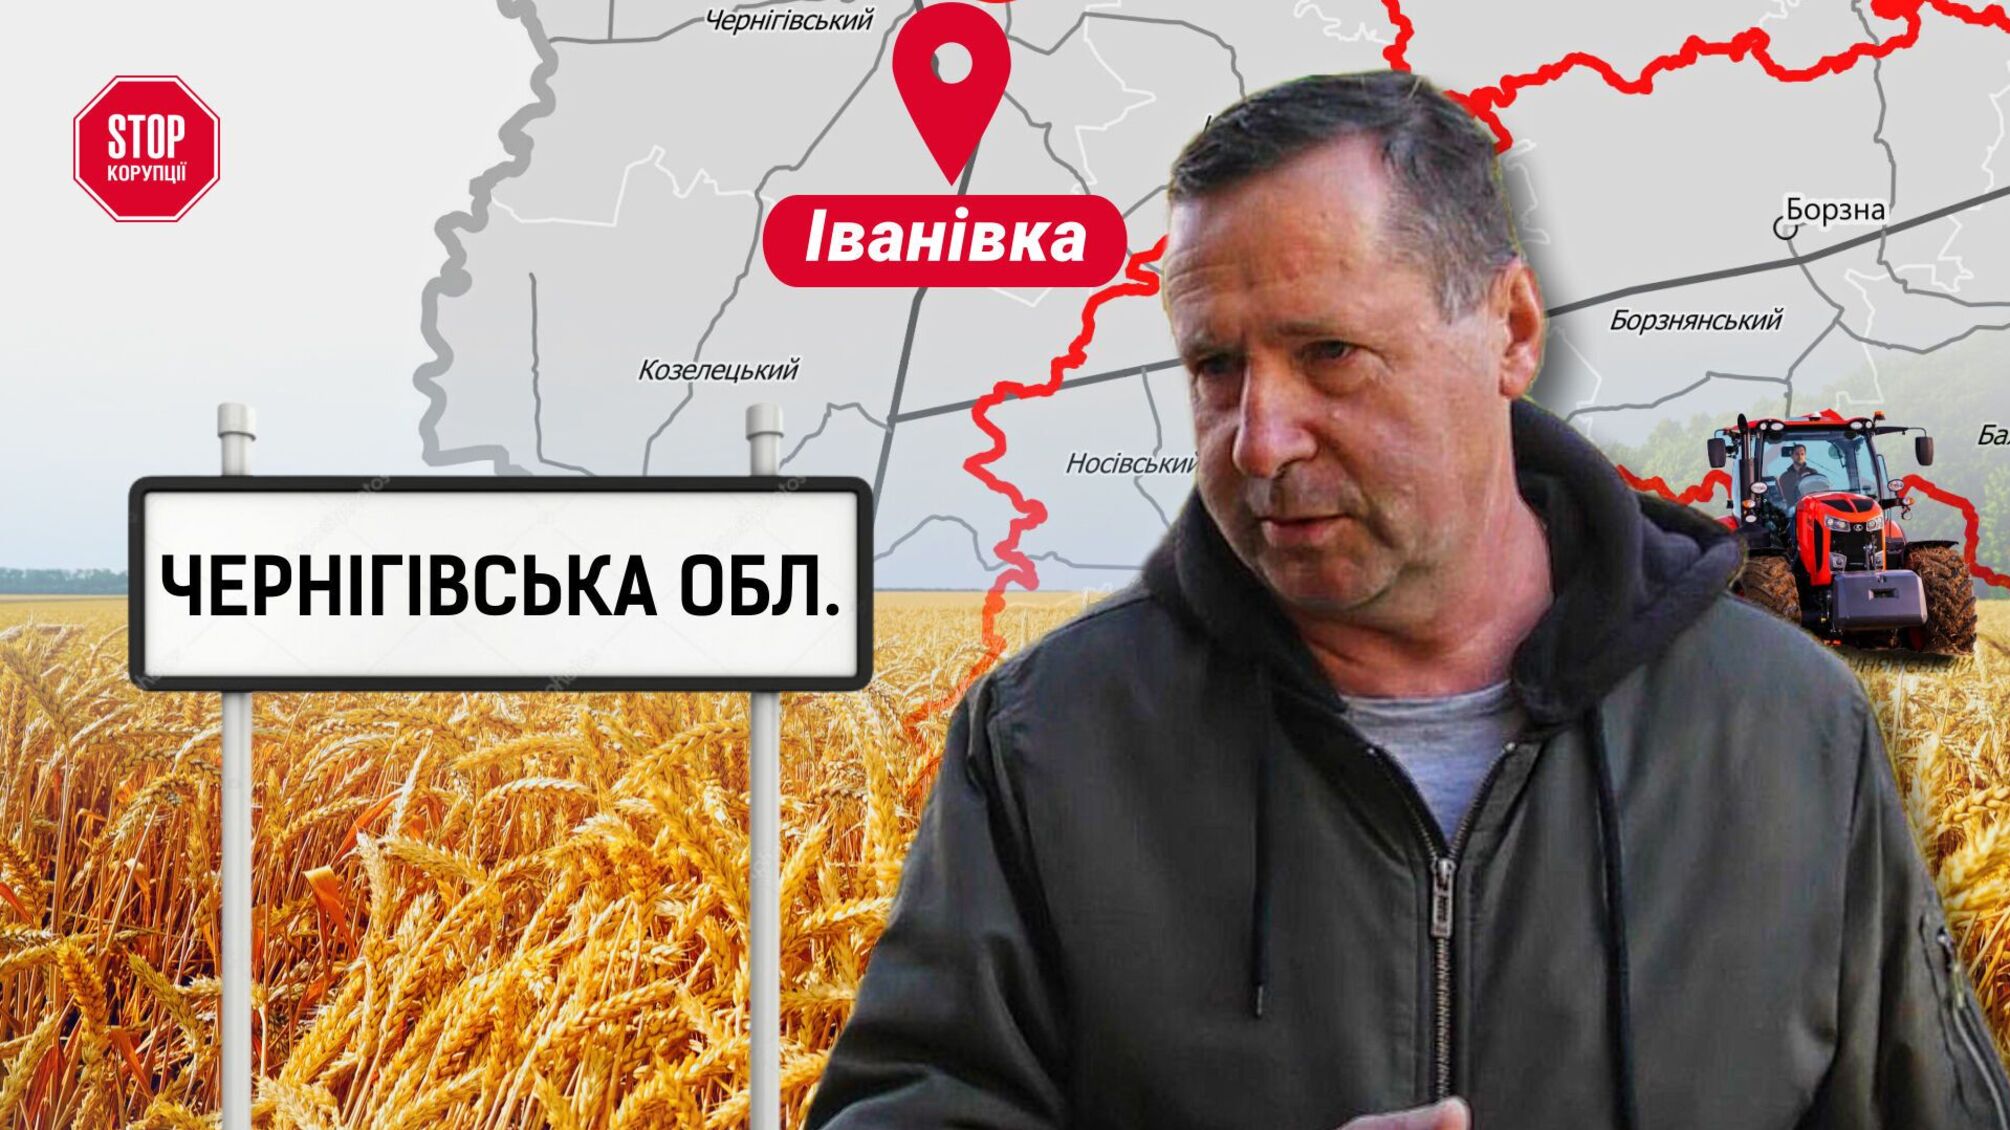 На Черниговщине сторонники экс-директора Скварского блокируют агрофирму: инвесторы могут потерять урожай?